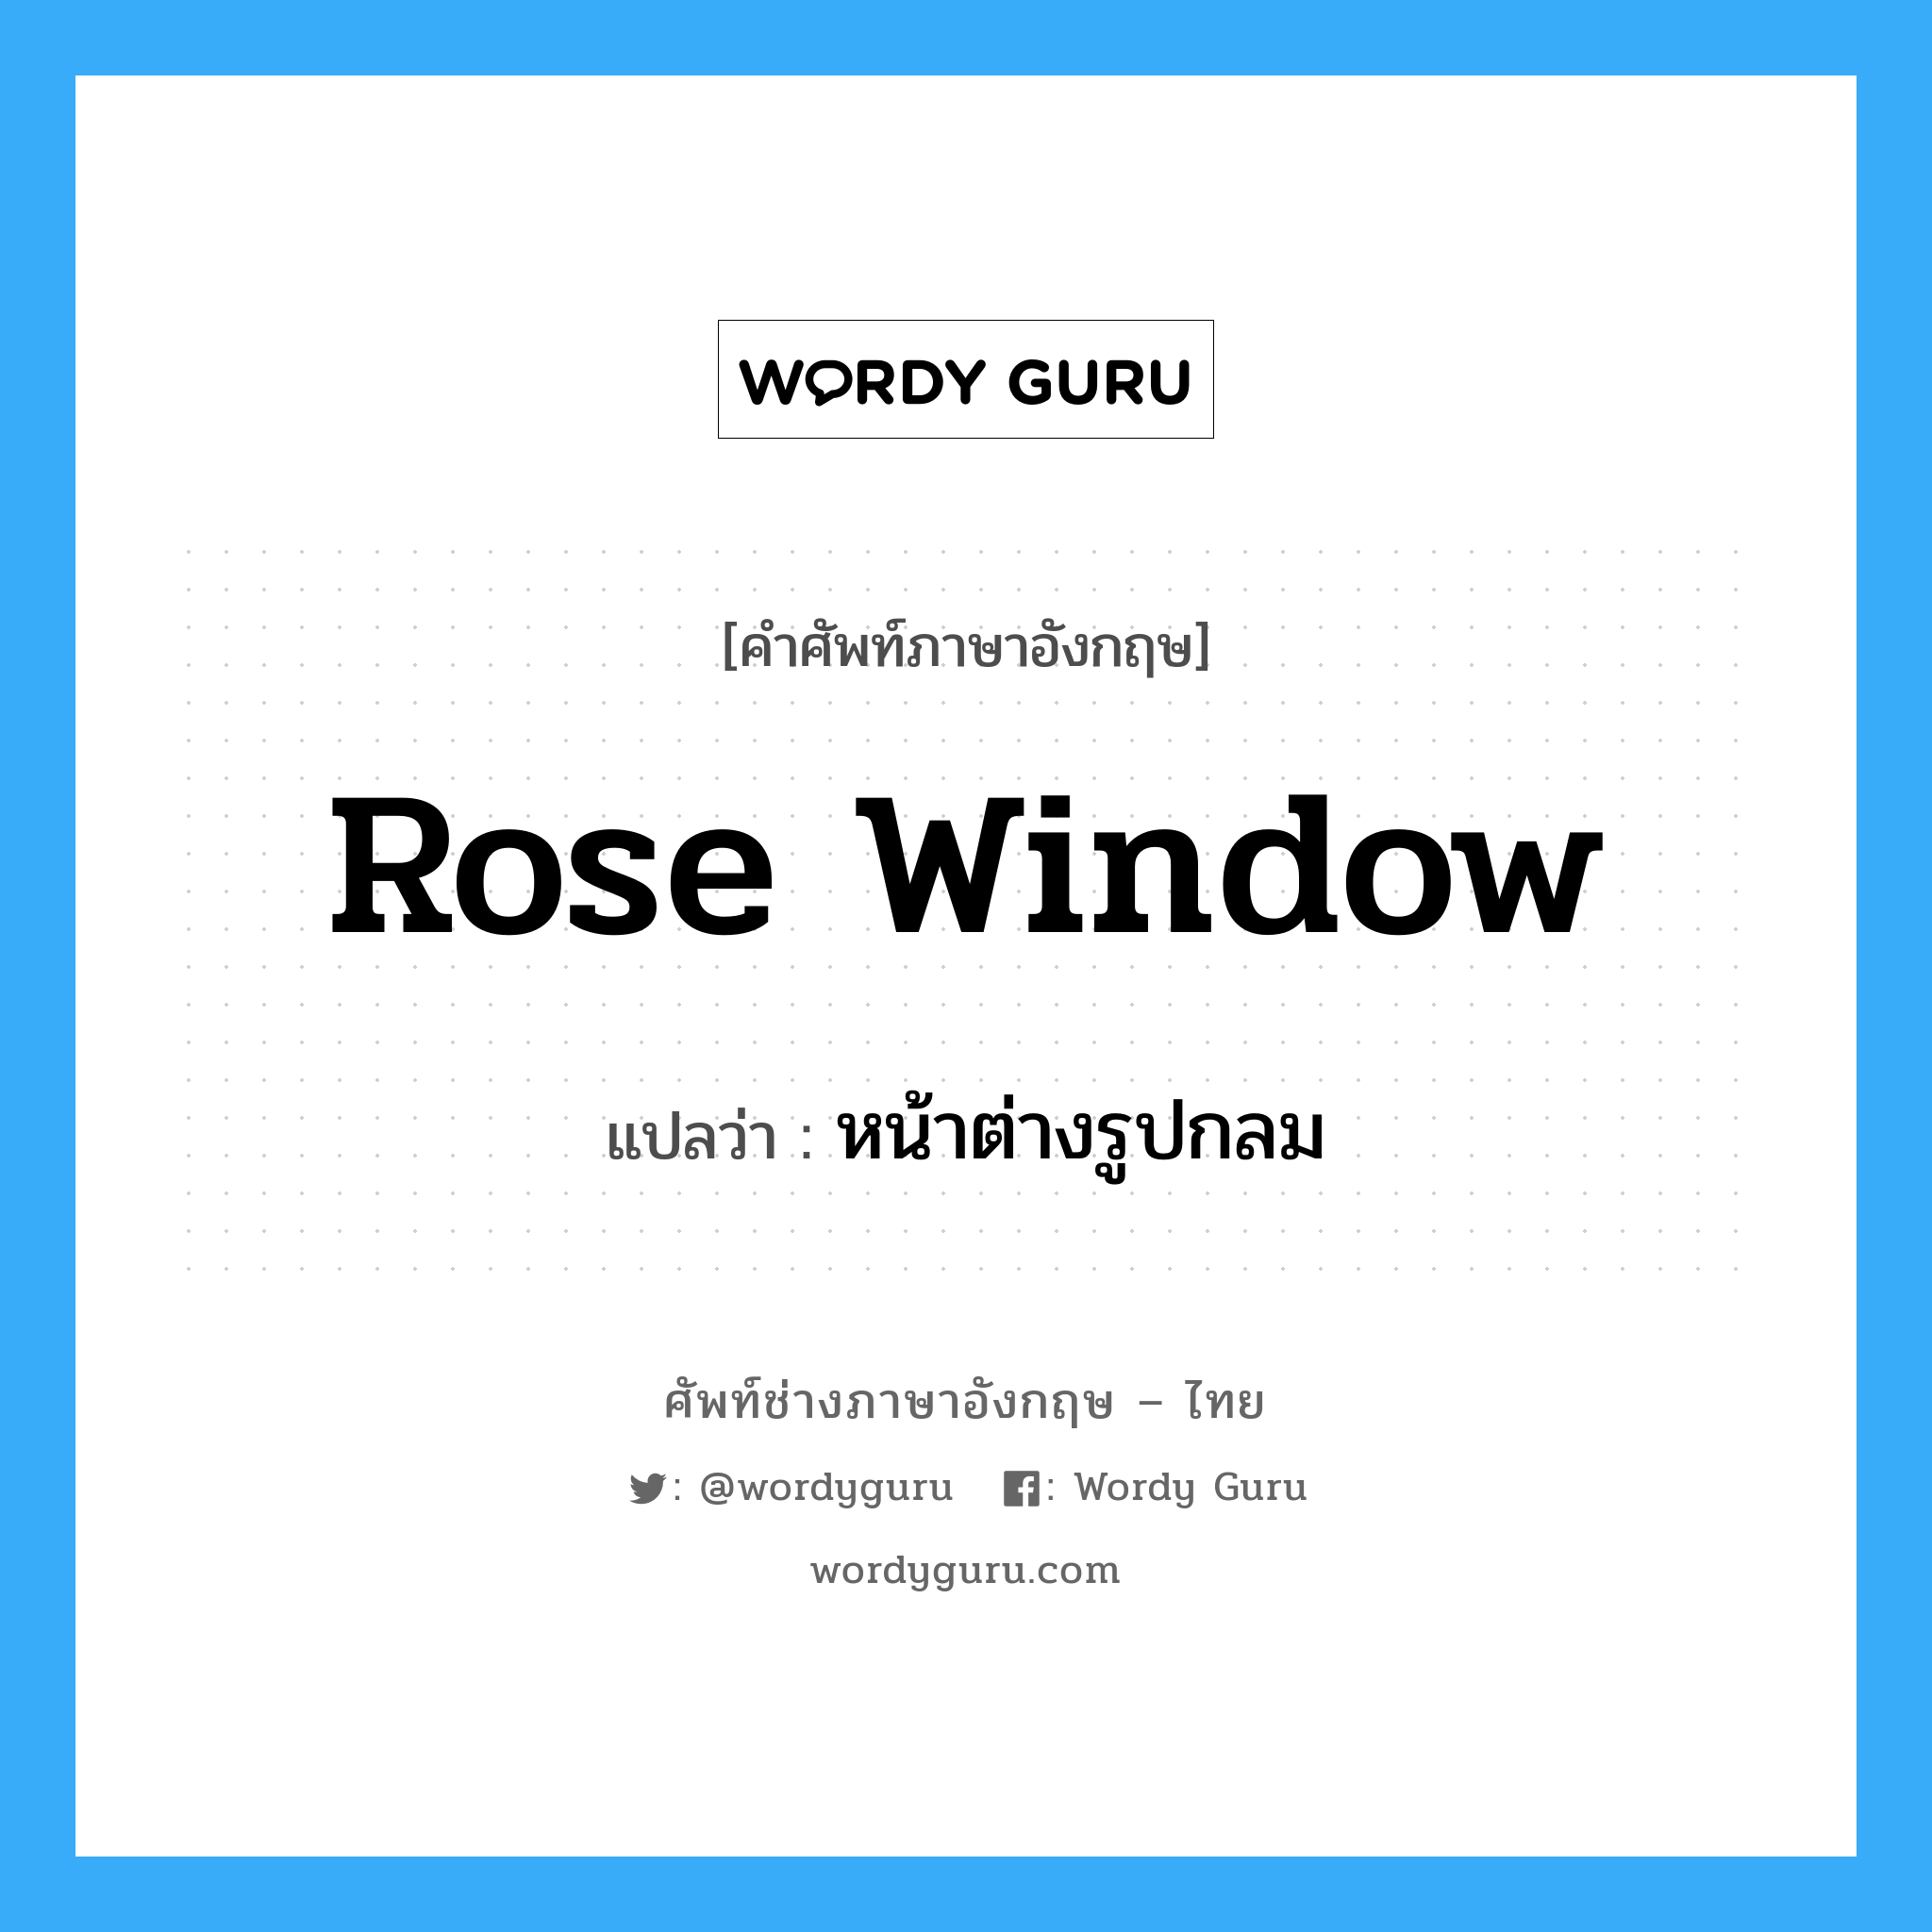 หน้าต่างรูปกลม ภาษาอังกฤษ?, คำศัพท์ช่างภาษาอังกฤษ - ไทย หน้าต่างรูปกลม คำศัพท์ภาษาอังกฤษ หน้าต่างรูปกลม แปลว่า rose window